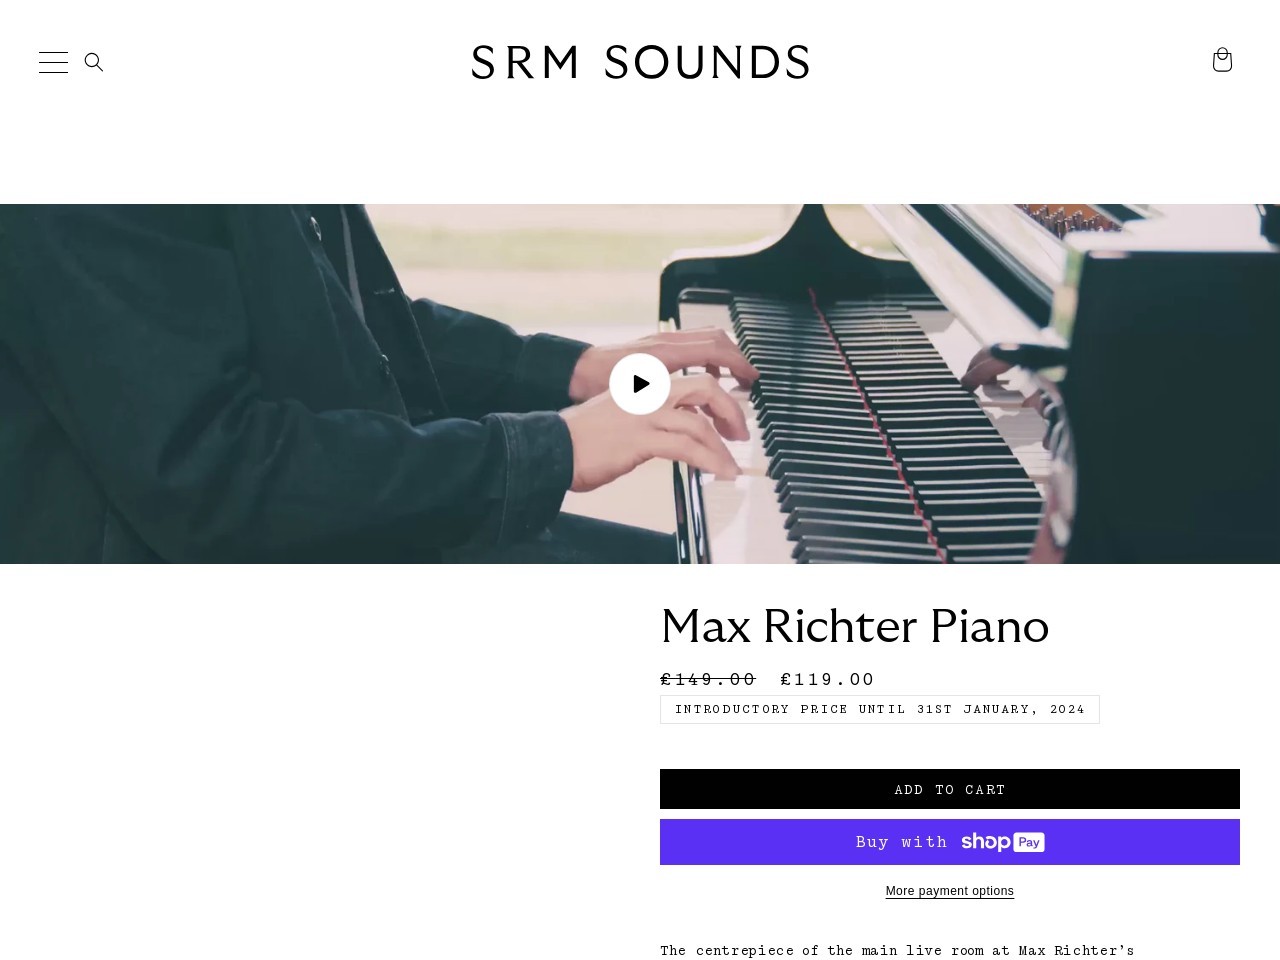 Max Richter Piano – SRM Sounds